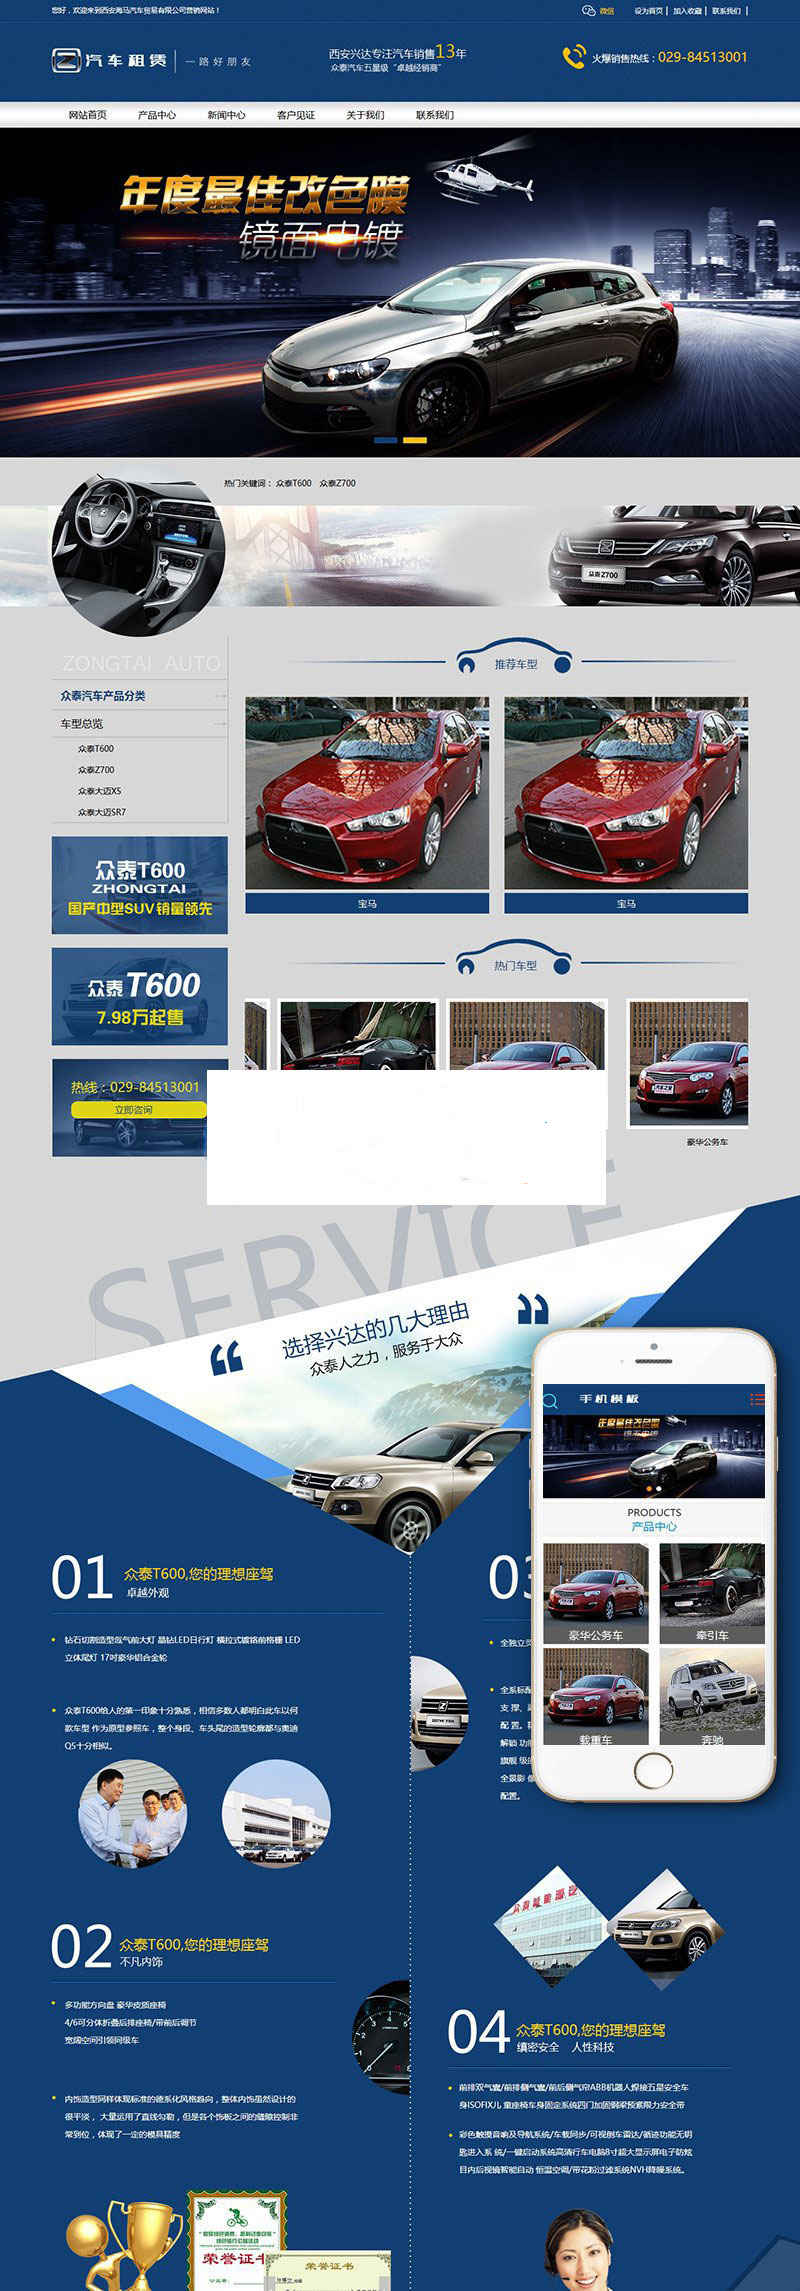 织梦dedecms营销型汽车租赁公司网站模板(带手机移动端)插图